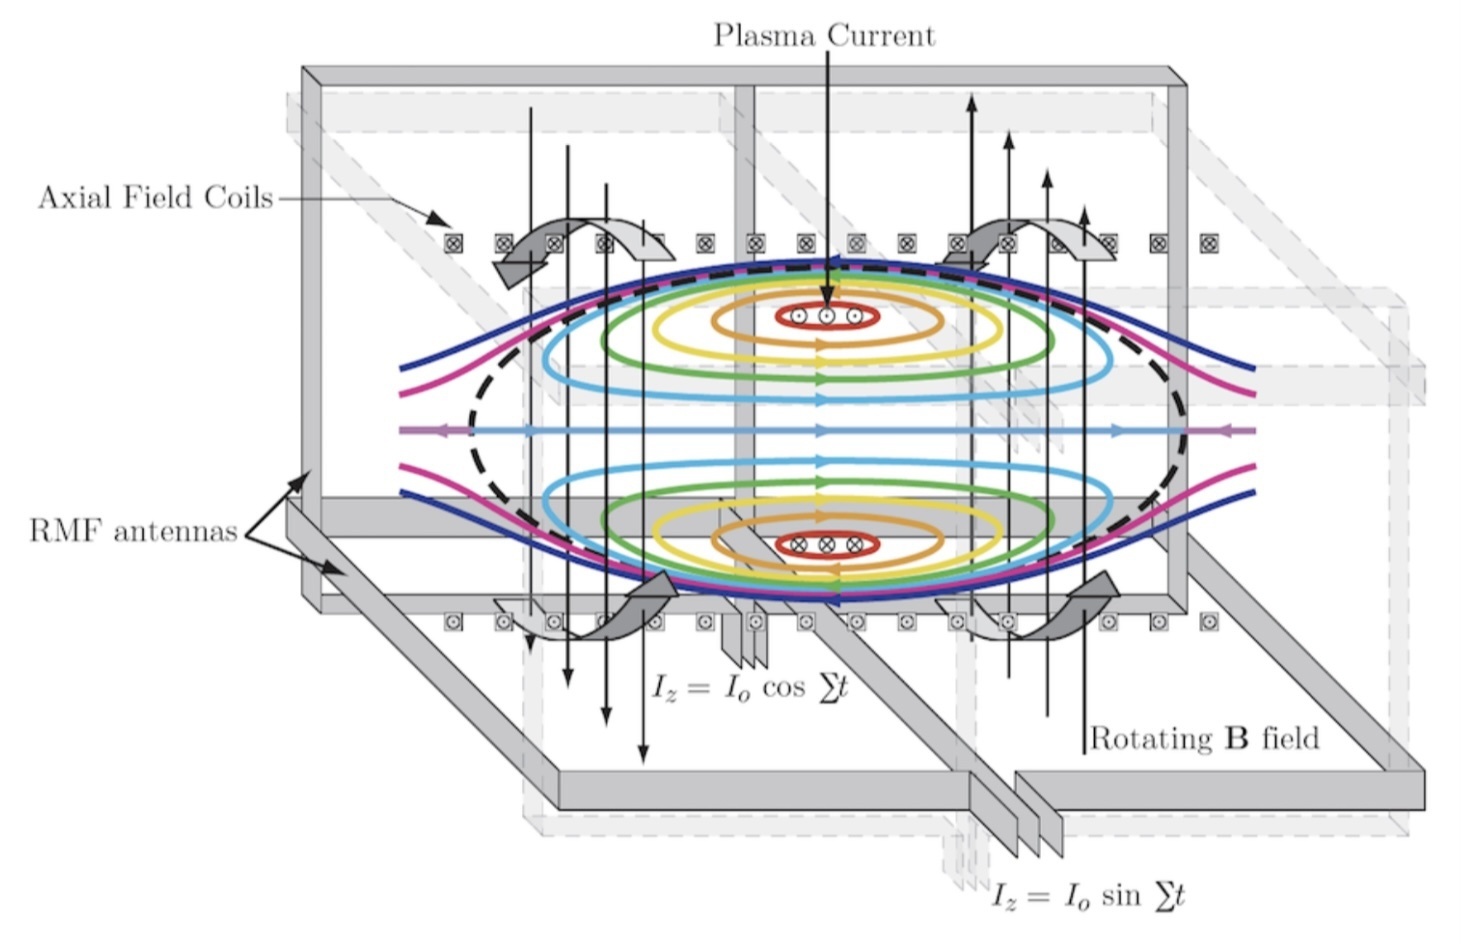 Рисунок 3.19 из документа «Разработка плана полета для миссии на Титан с использованием Direct Fusion Drive»: Схема вращающегося поля PFRC-2. Внешняя антенна производит вращающиеся магнитные поля. Азимутально вращающееся электрическое поле создает токовое кольцо в плазме